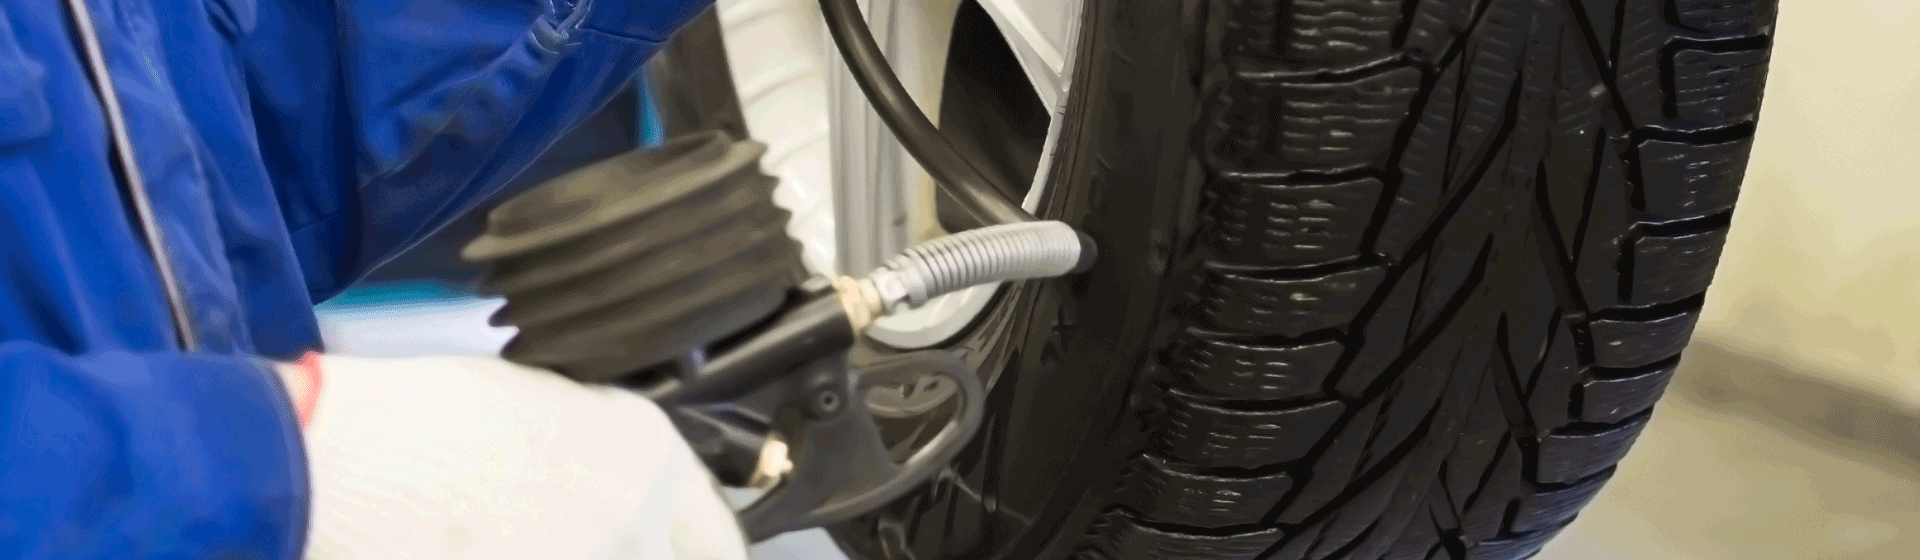 Pression pneu : où faire le gonflage des pneus ?